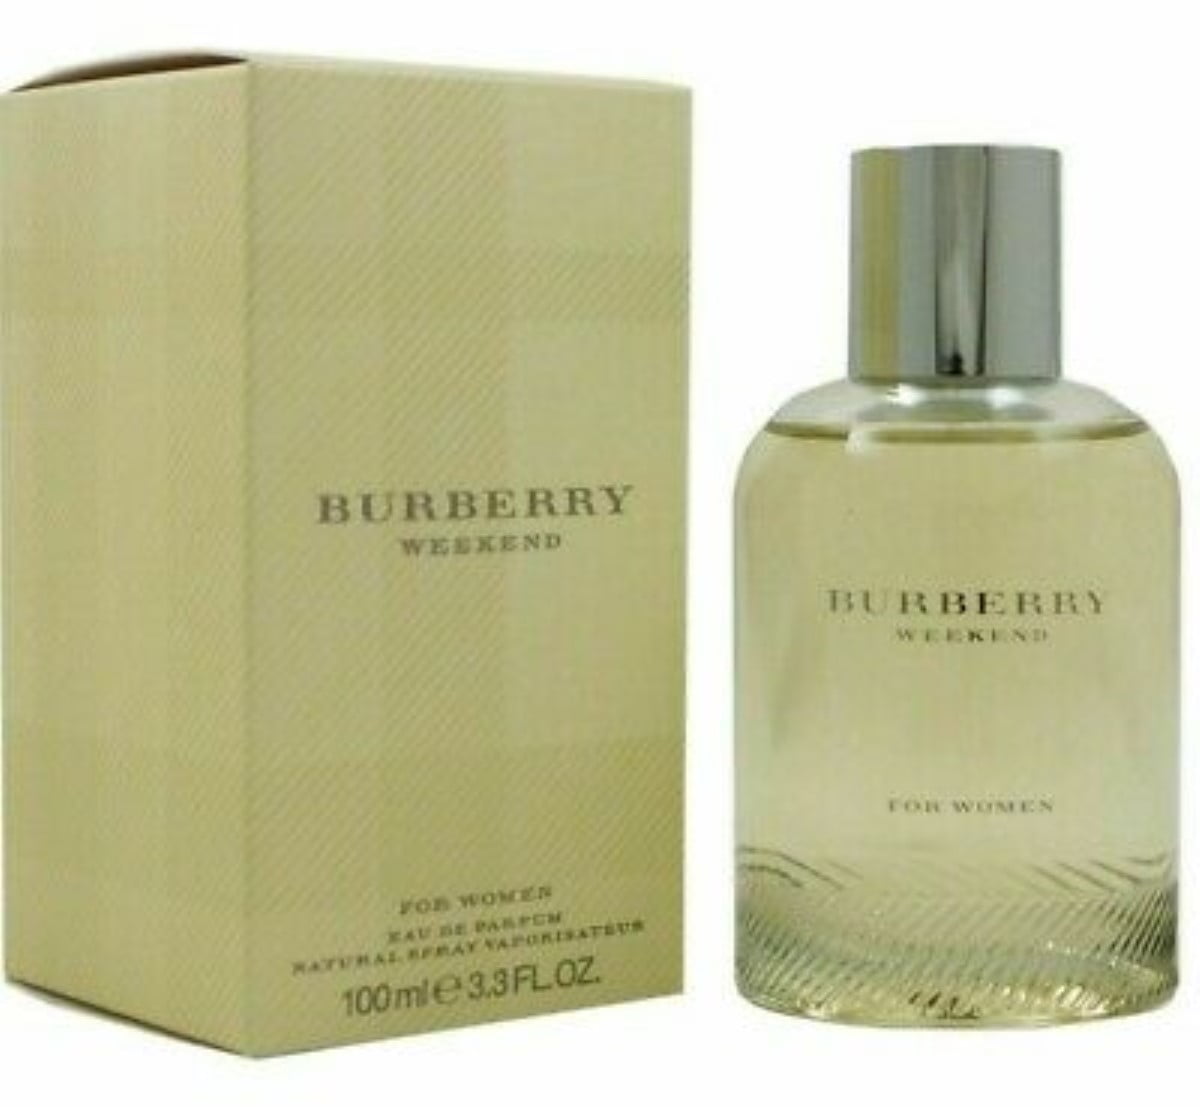 Burberry Weekend by Burberry Eau de Parfum Spray Perfume 3.3 oz (Pack of 3) - Walmart.com